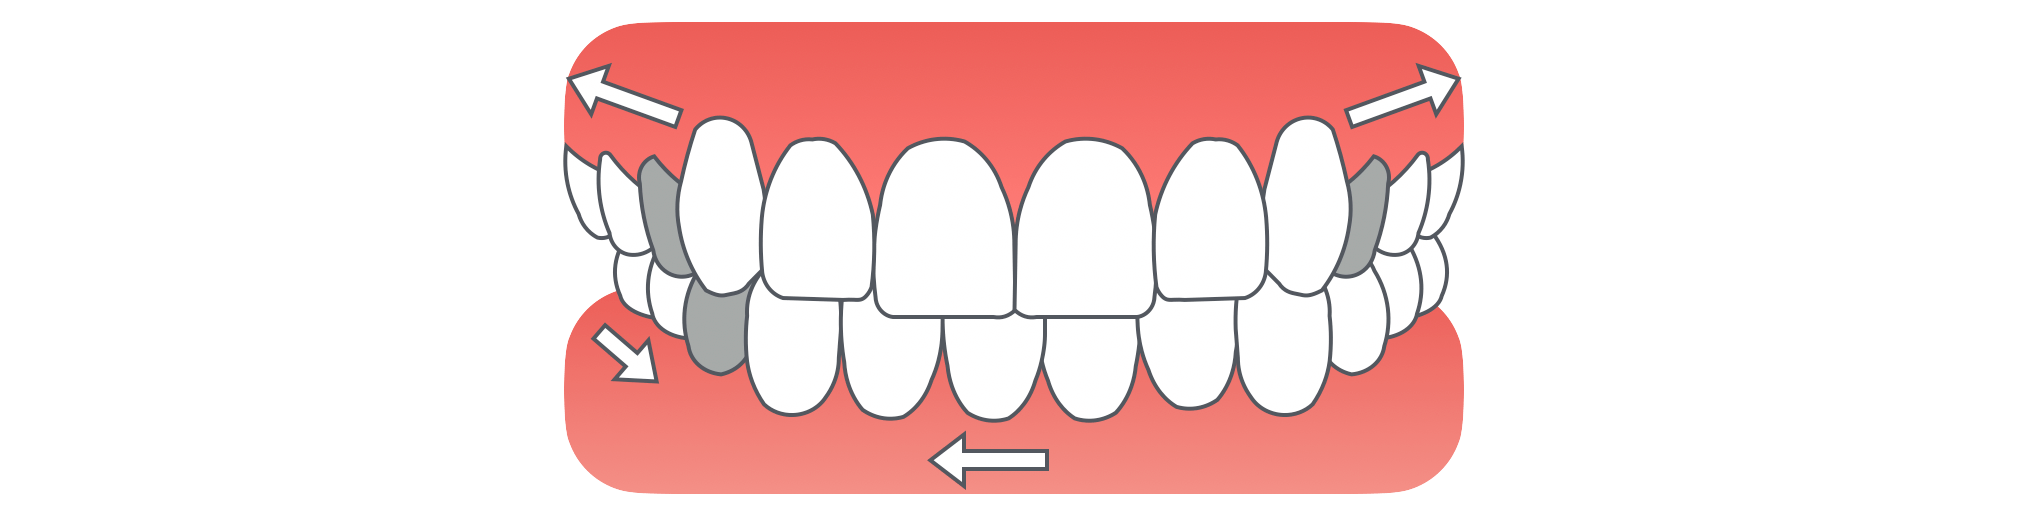 小臼歯3本抜歯